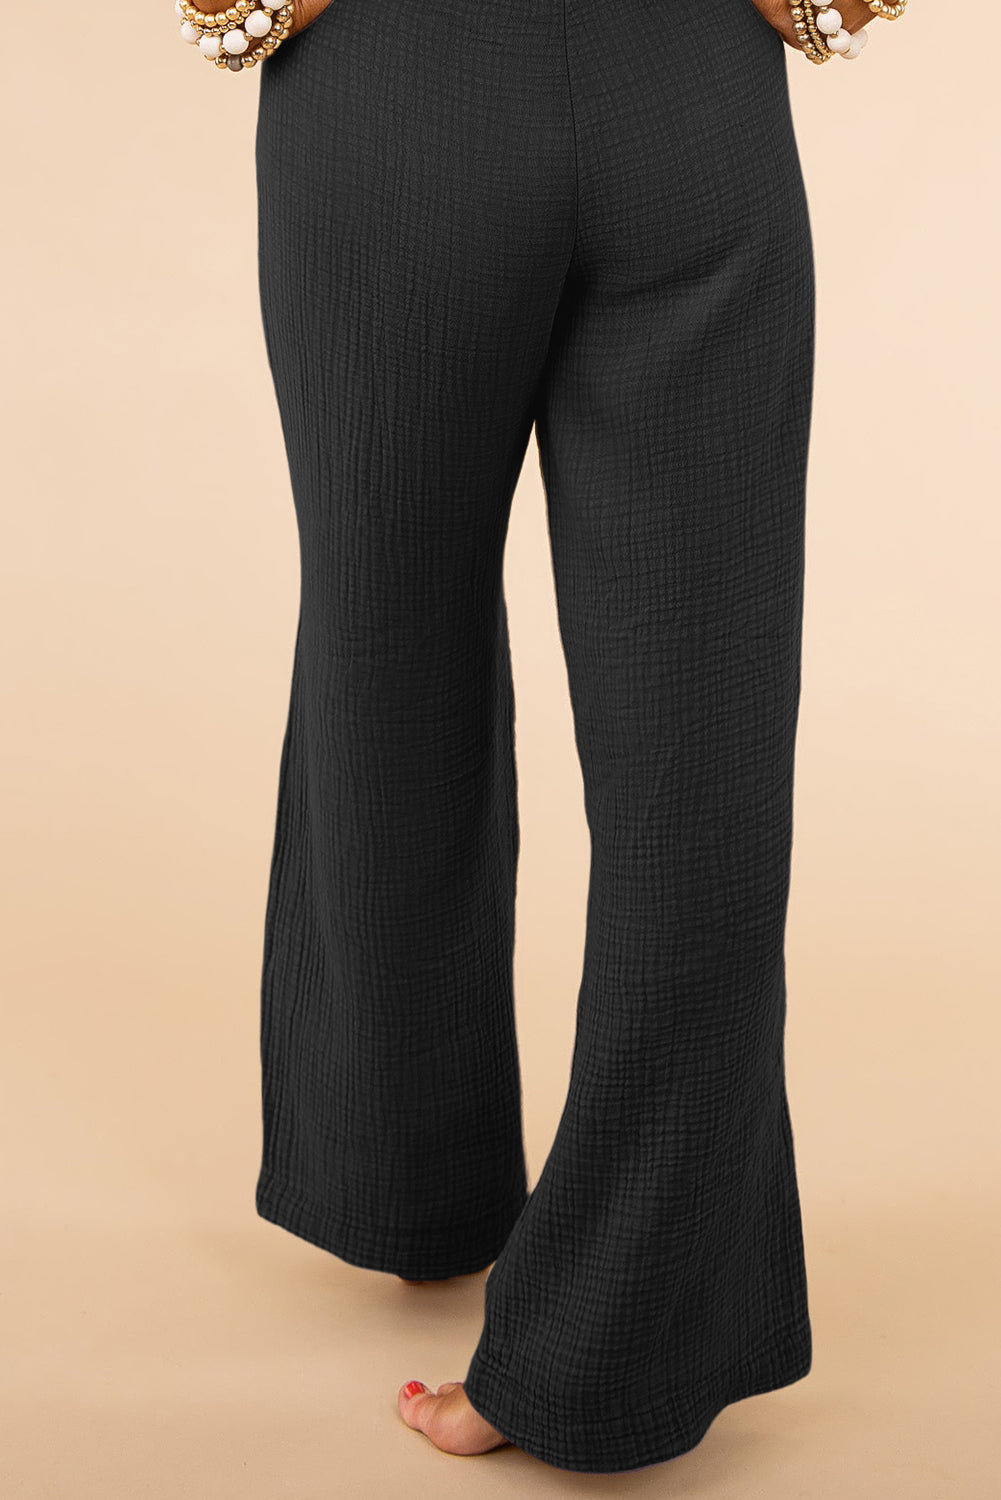 Crne teksturirane hlače širokih nogavica visokog struka veće veličine